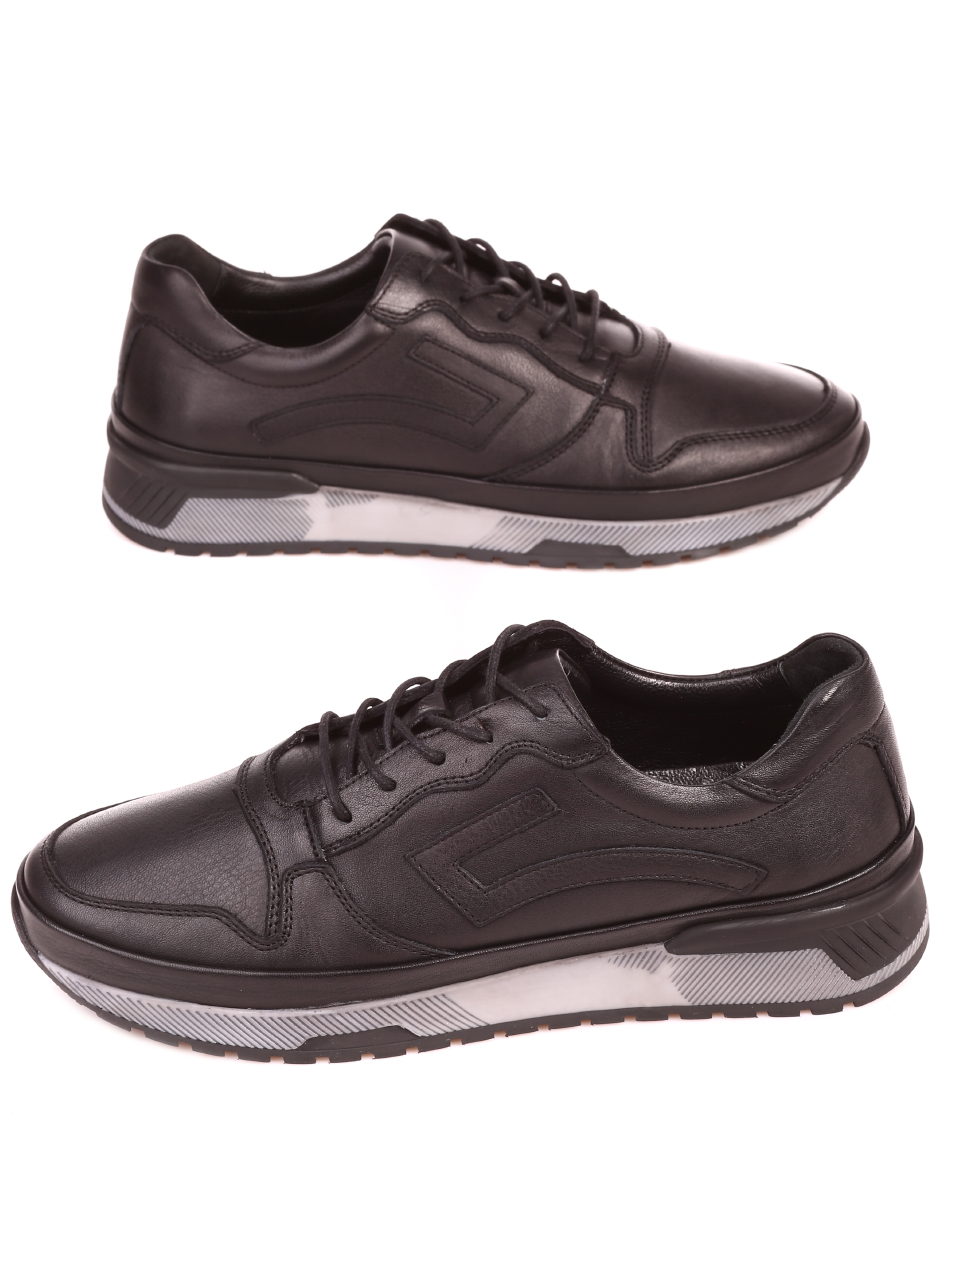 Ежедневни мъжки обувки от естествена кожа 7AT-21804 black